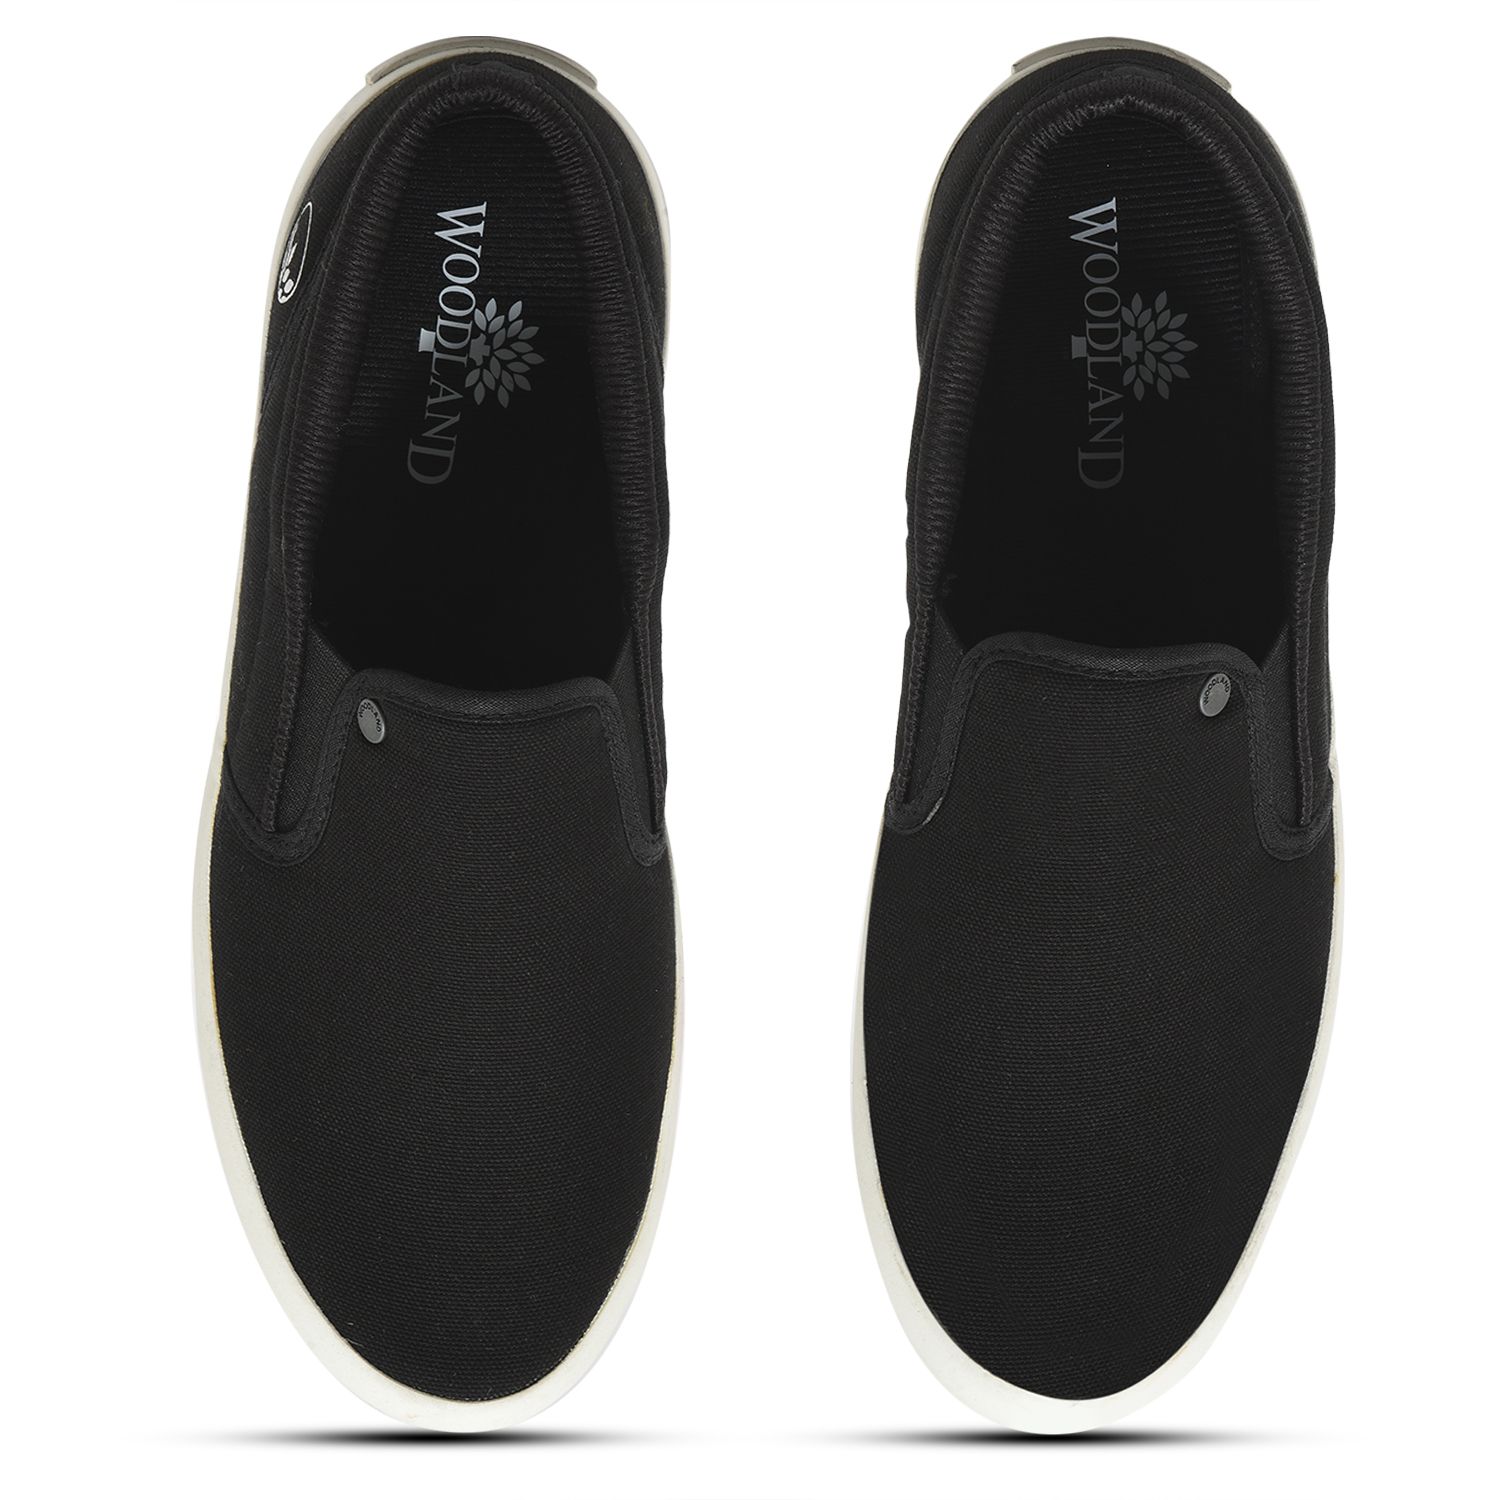 Black Slip-on shoe for men